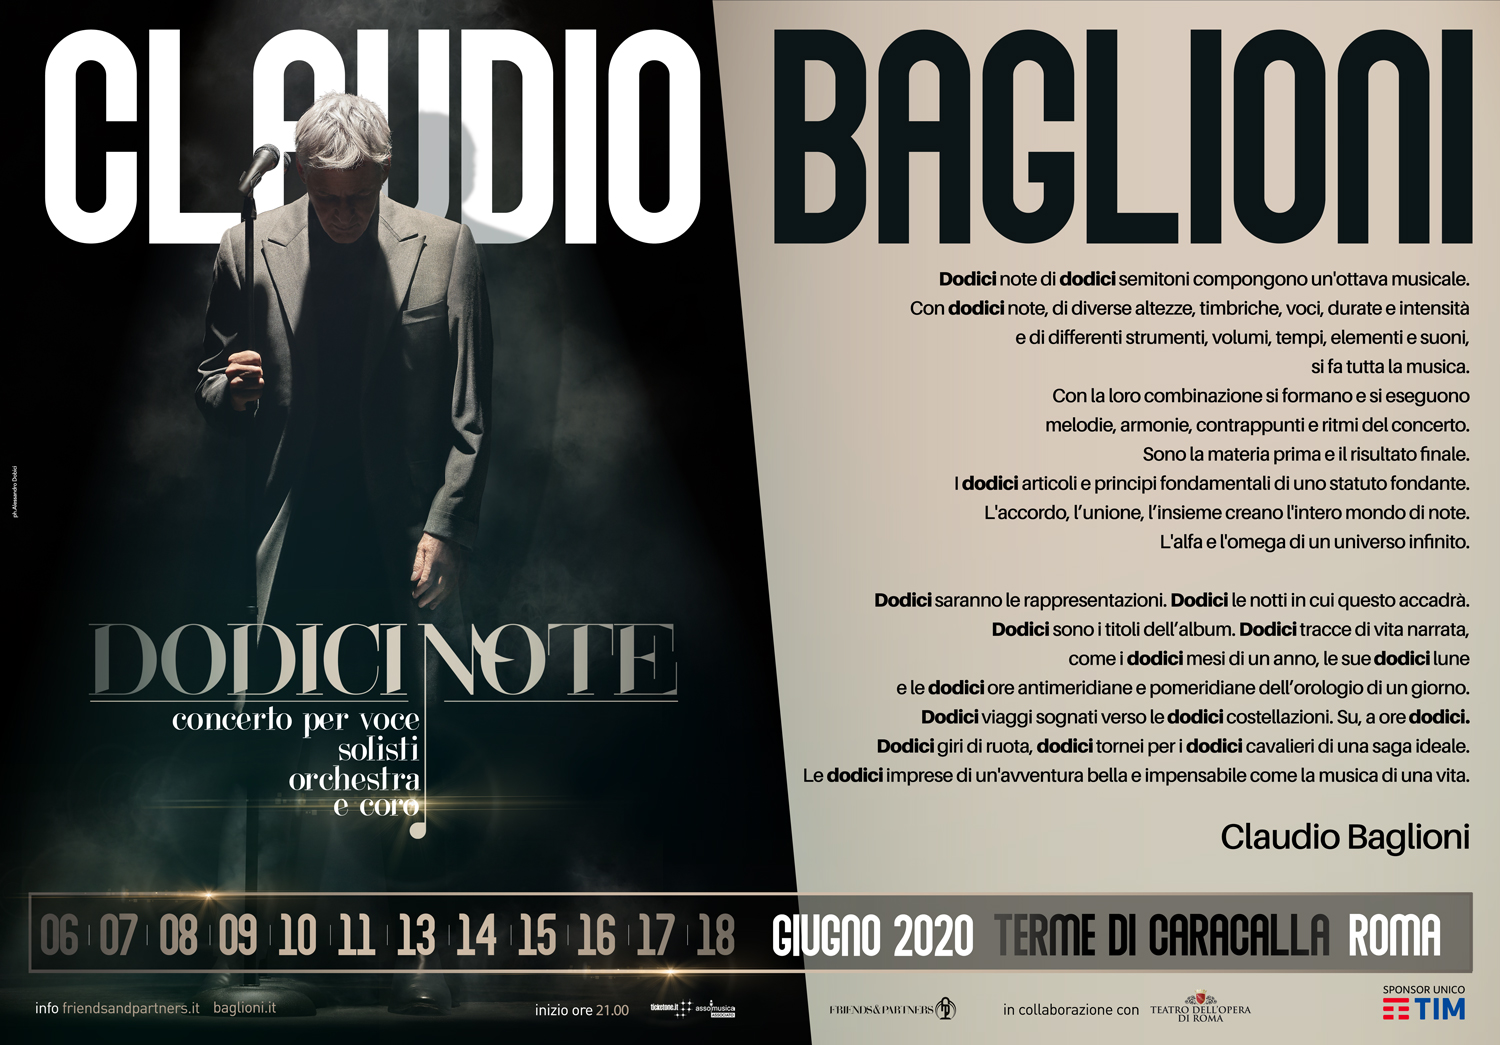 In radio e in digitale “Gli anni più belli”, il nuovo emozionante brano inedito di Claudio Baglioni.